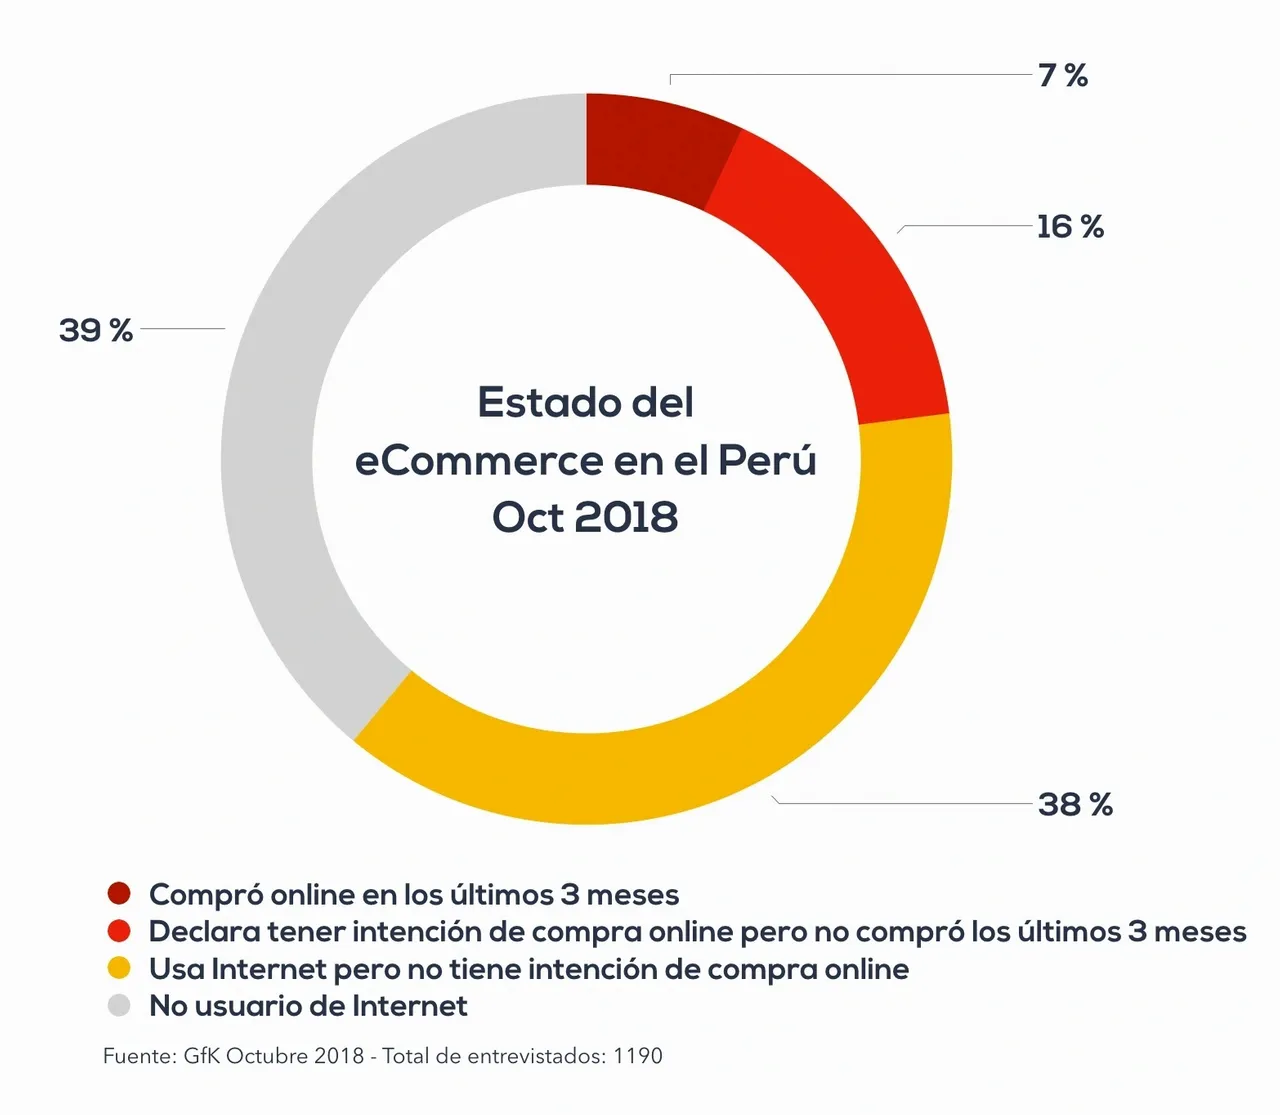 Incrementa la cantidad de usuarios compradores online a 23% de Perú urbano, 2 puntos mas que el año anterior.